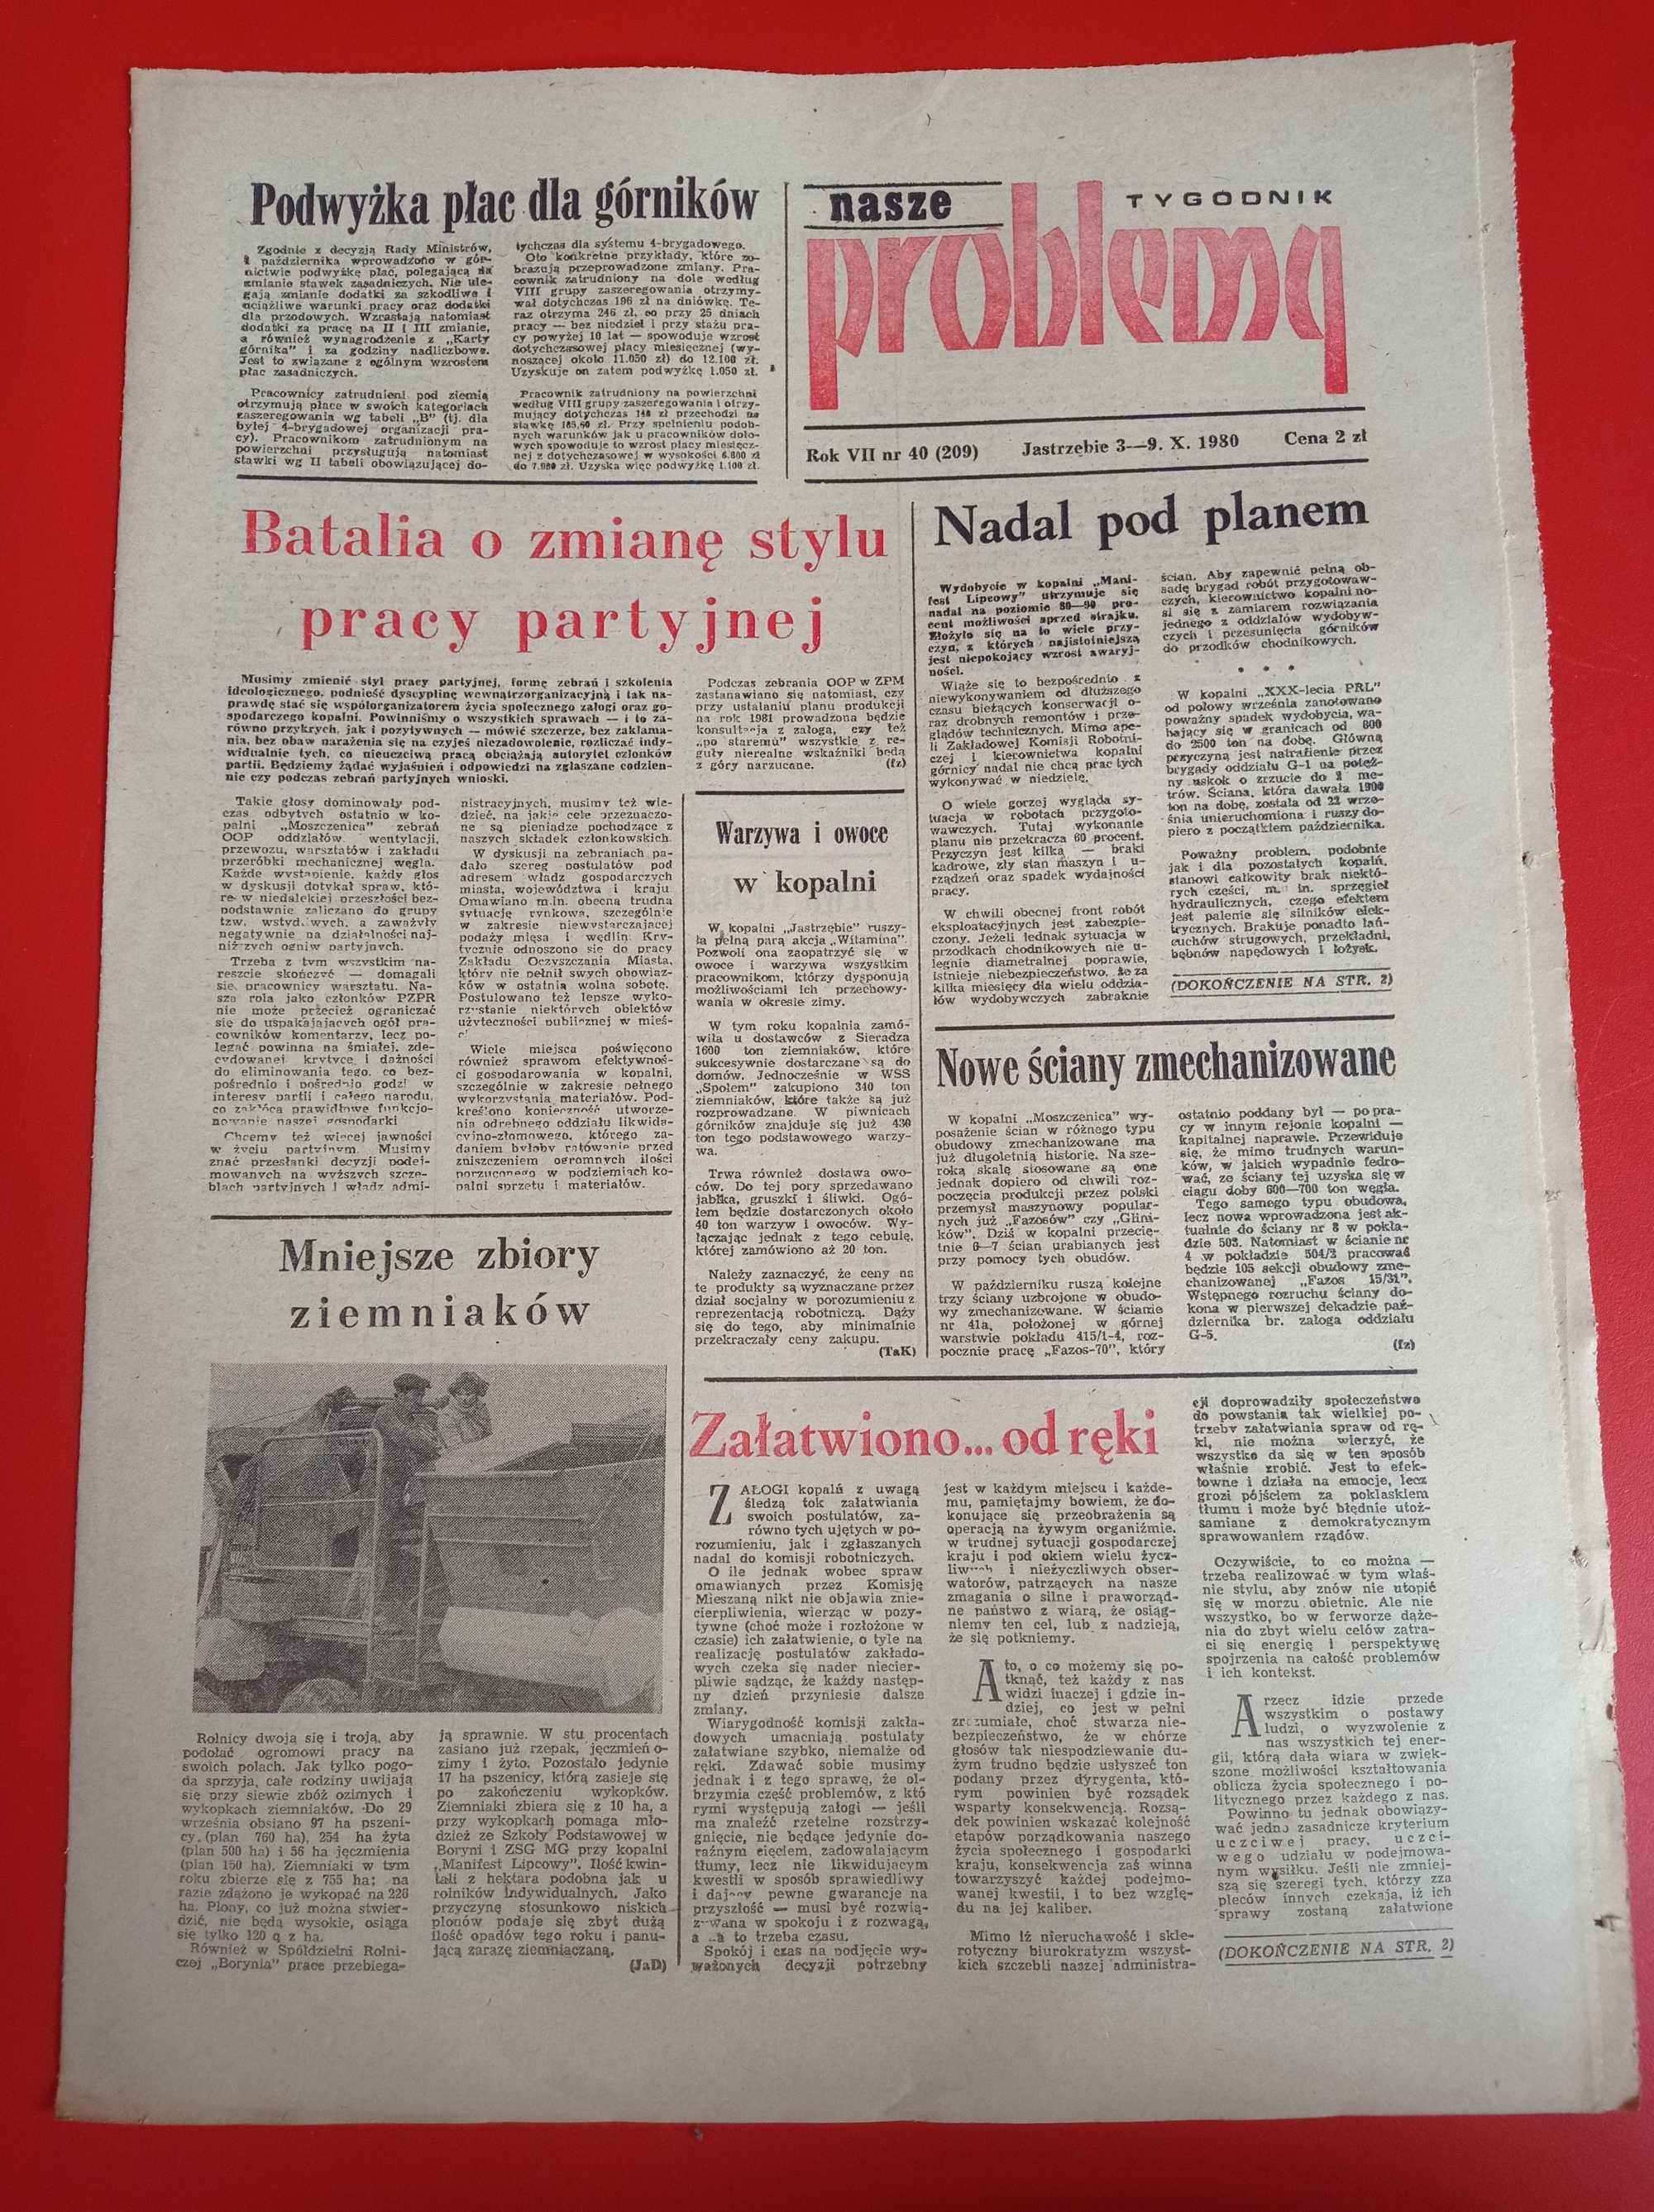 Nasze problemy, Jastrzębie, nr 40, 3-9 października 1980